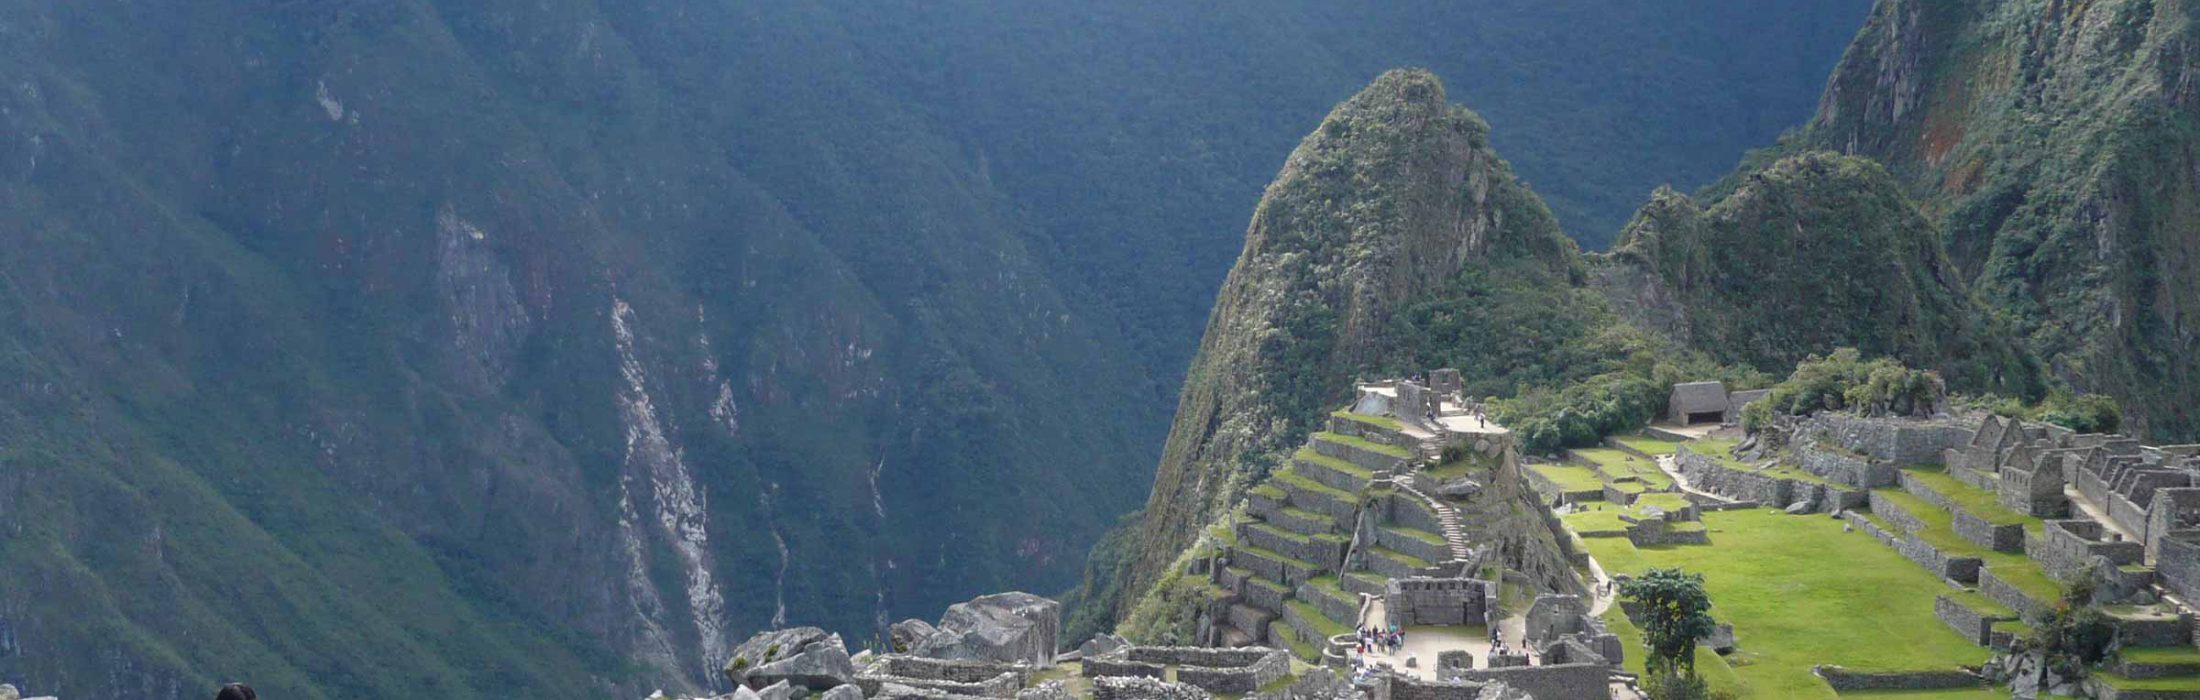 2 Day Machu Picchu by Bus